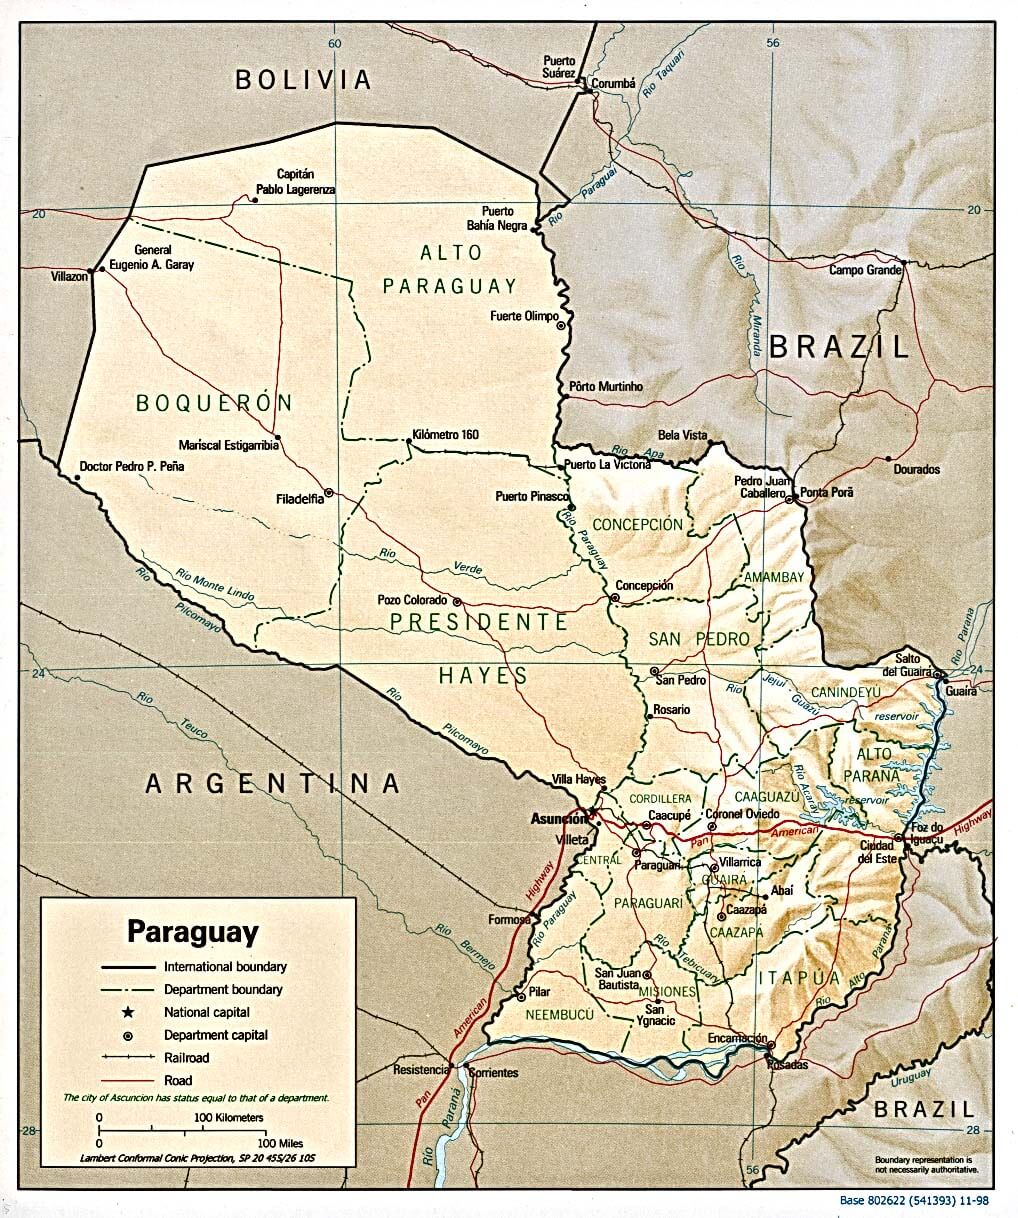 paraguay beschattet linderung karte 1998